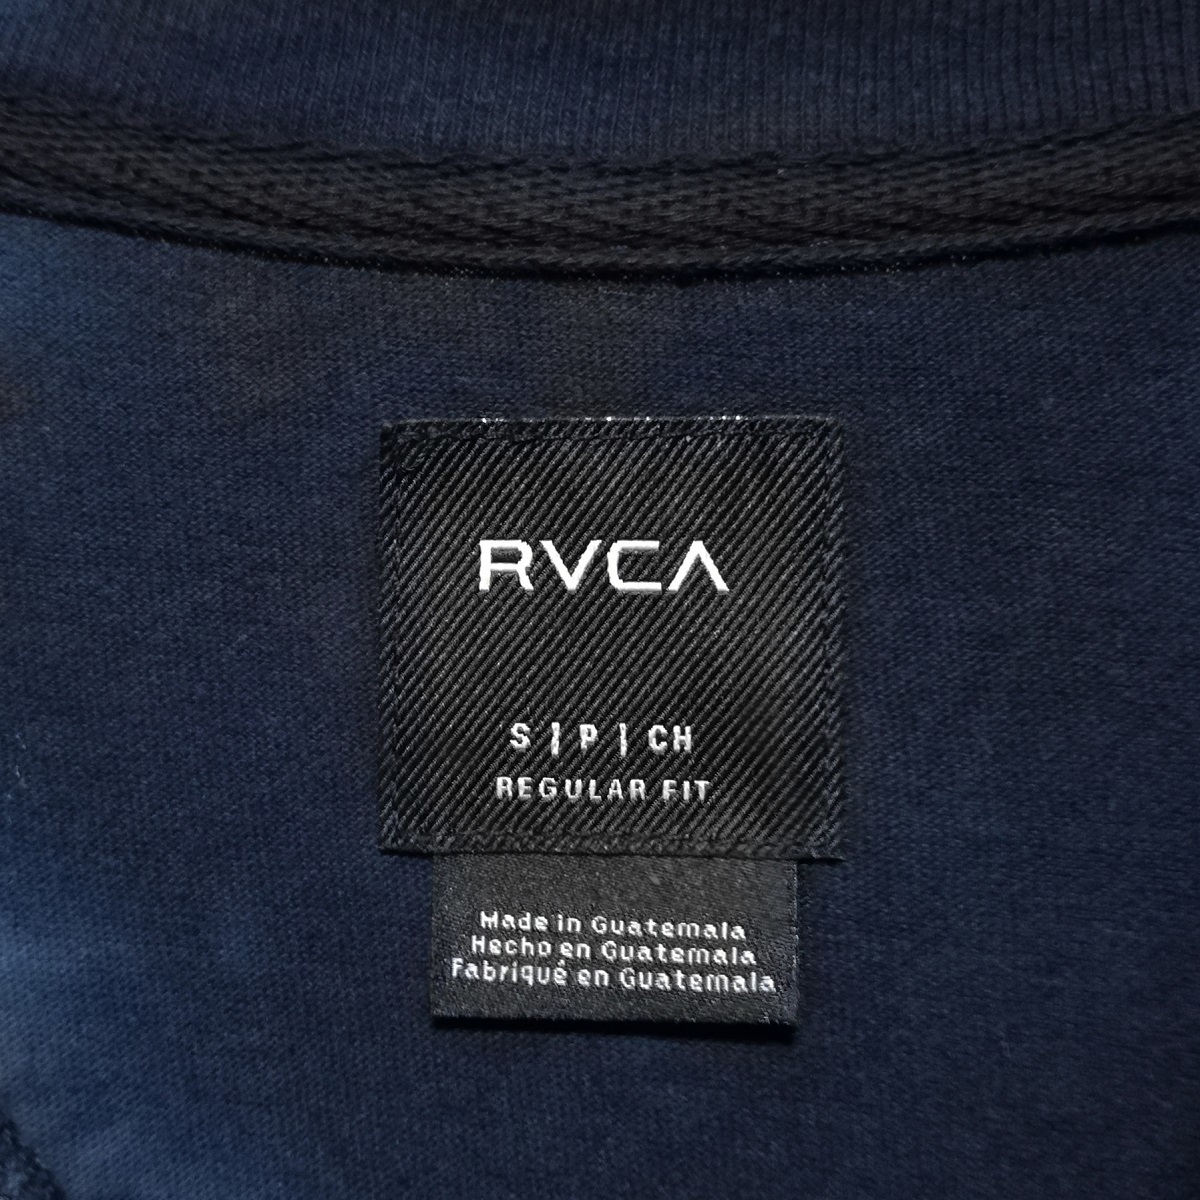 RVCA ルーカ ネイビー VA タイダイ 柄 メンズ クルーネック 半袖 ポケット Tシャツ S 紺 美品 サーフ サーフボード スケボー スノーボード_画像5